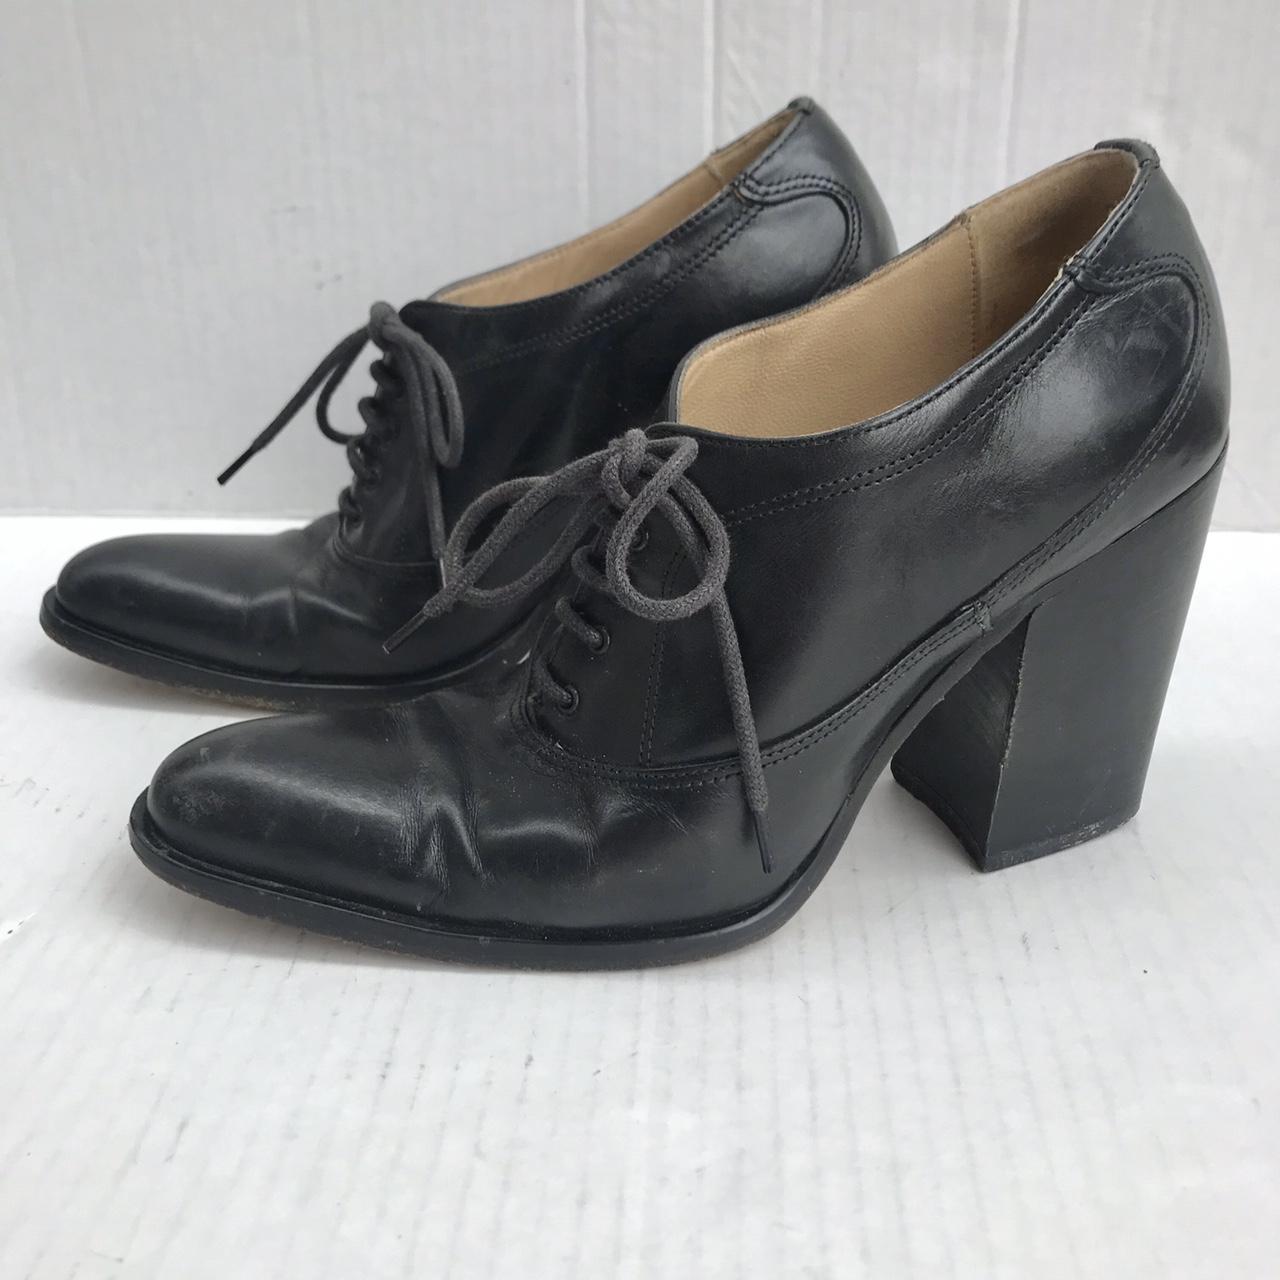 90's vintage Joan Helpern Signature shoe (Joan of... - Depop